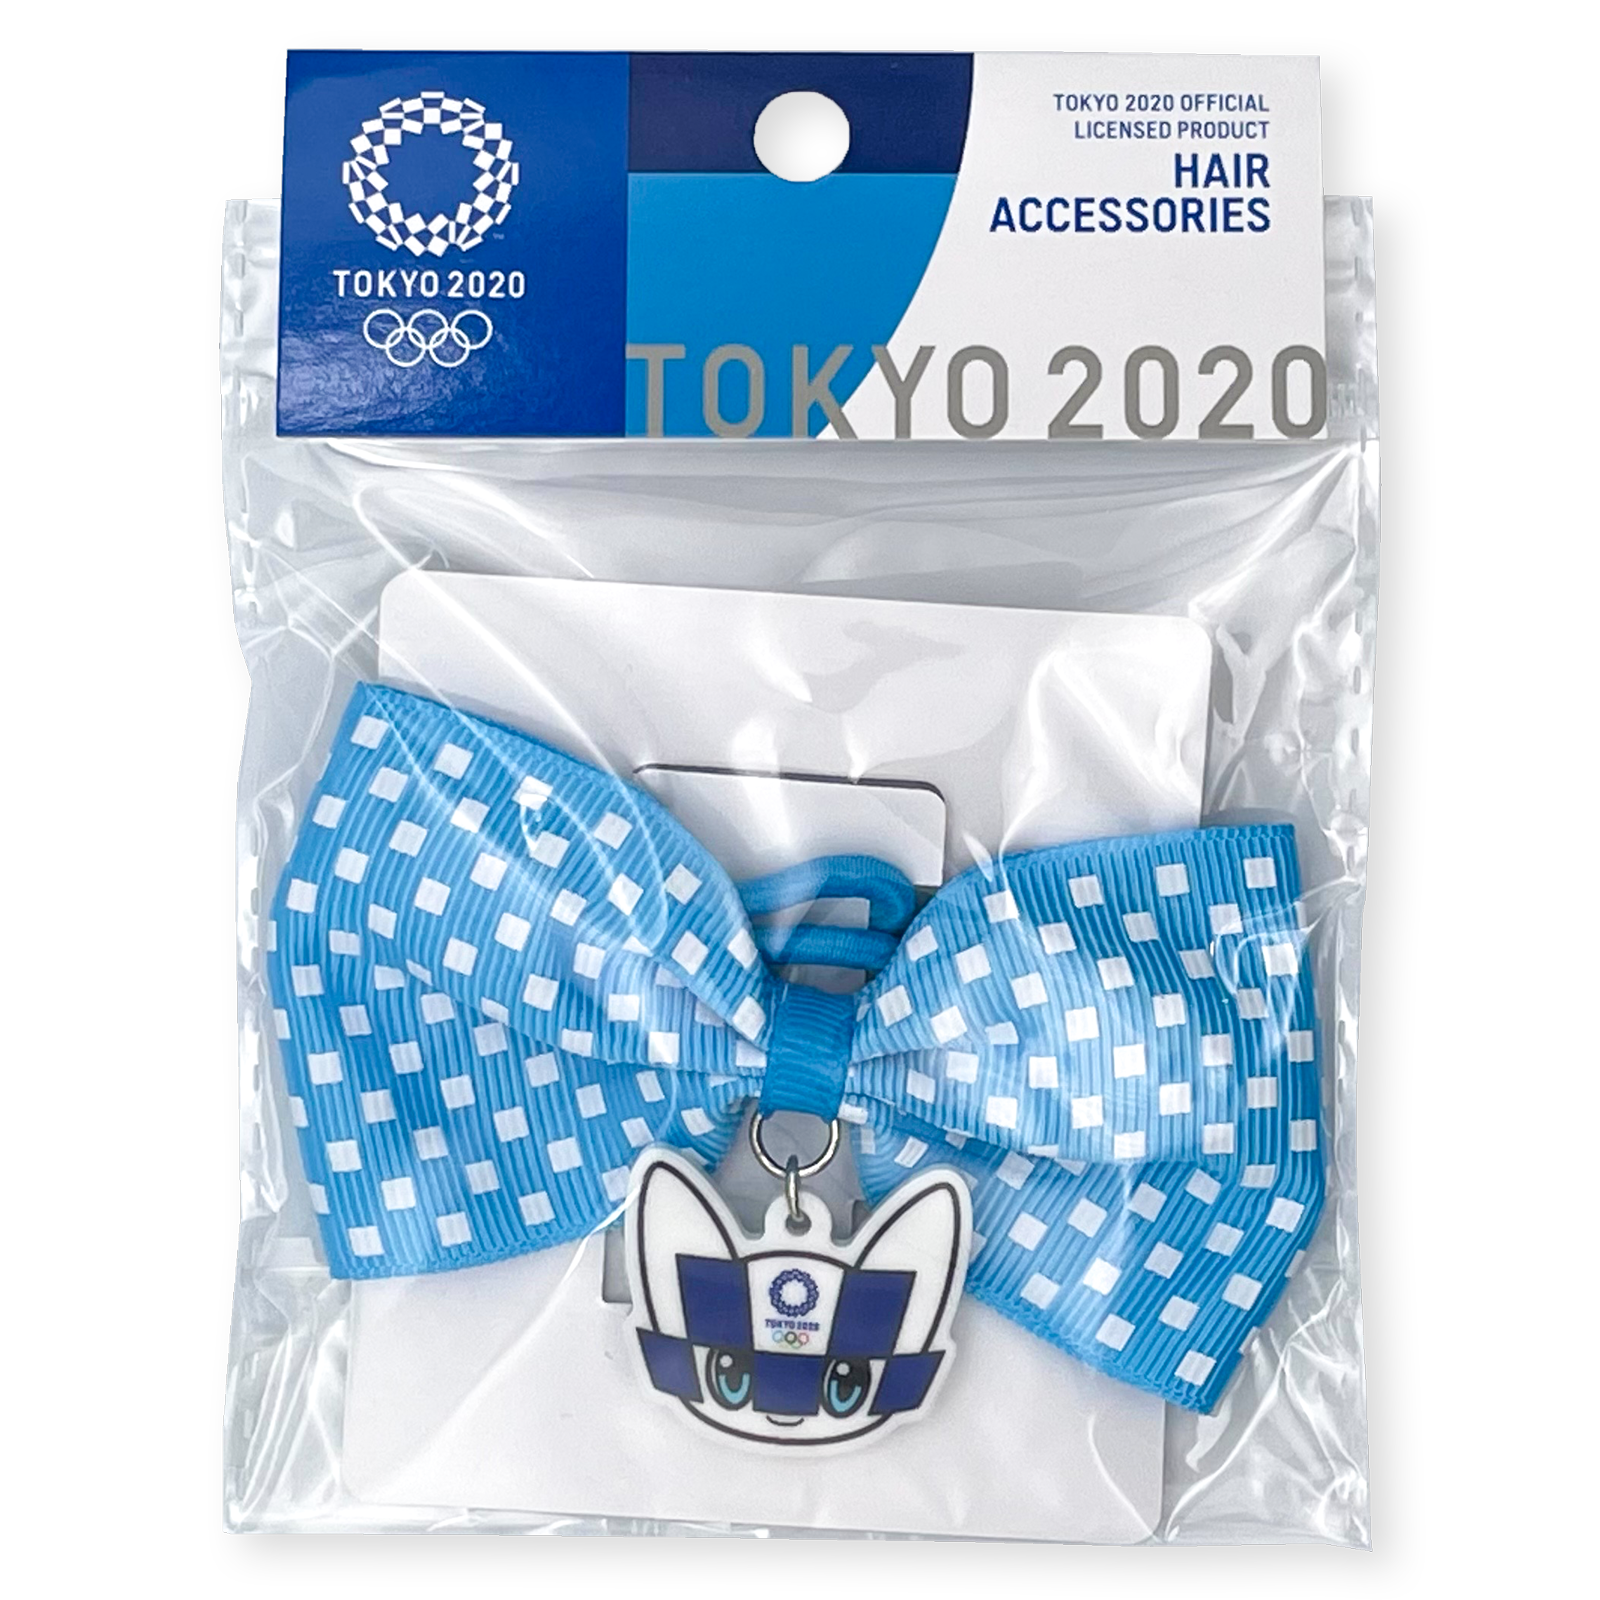 東京パラリンピック競技大会 公式ライセンス商品 東京オリンピックマスコットパーツ付リボンヘアゴム